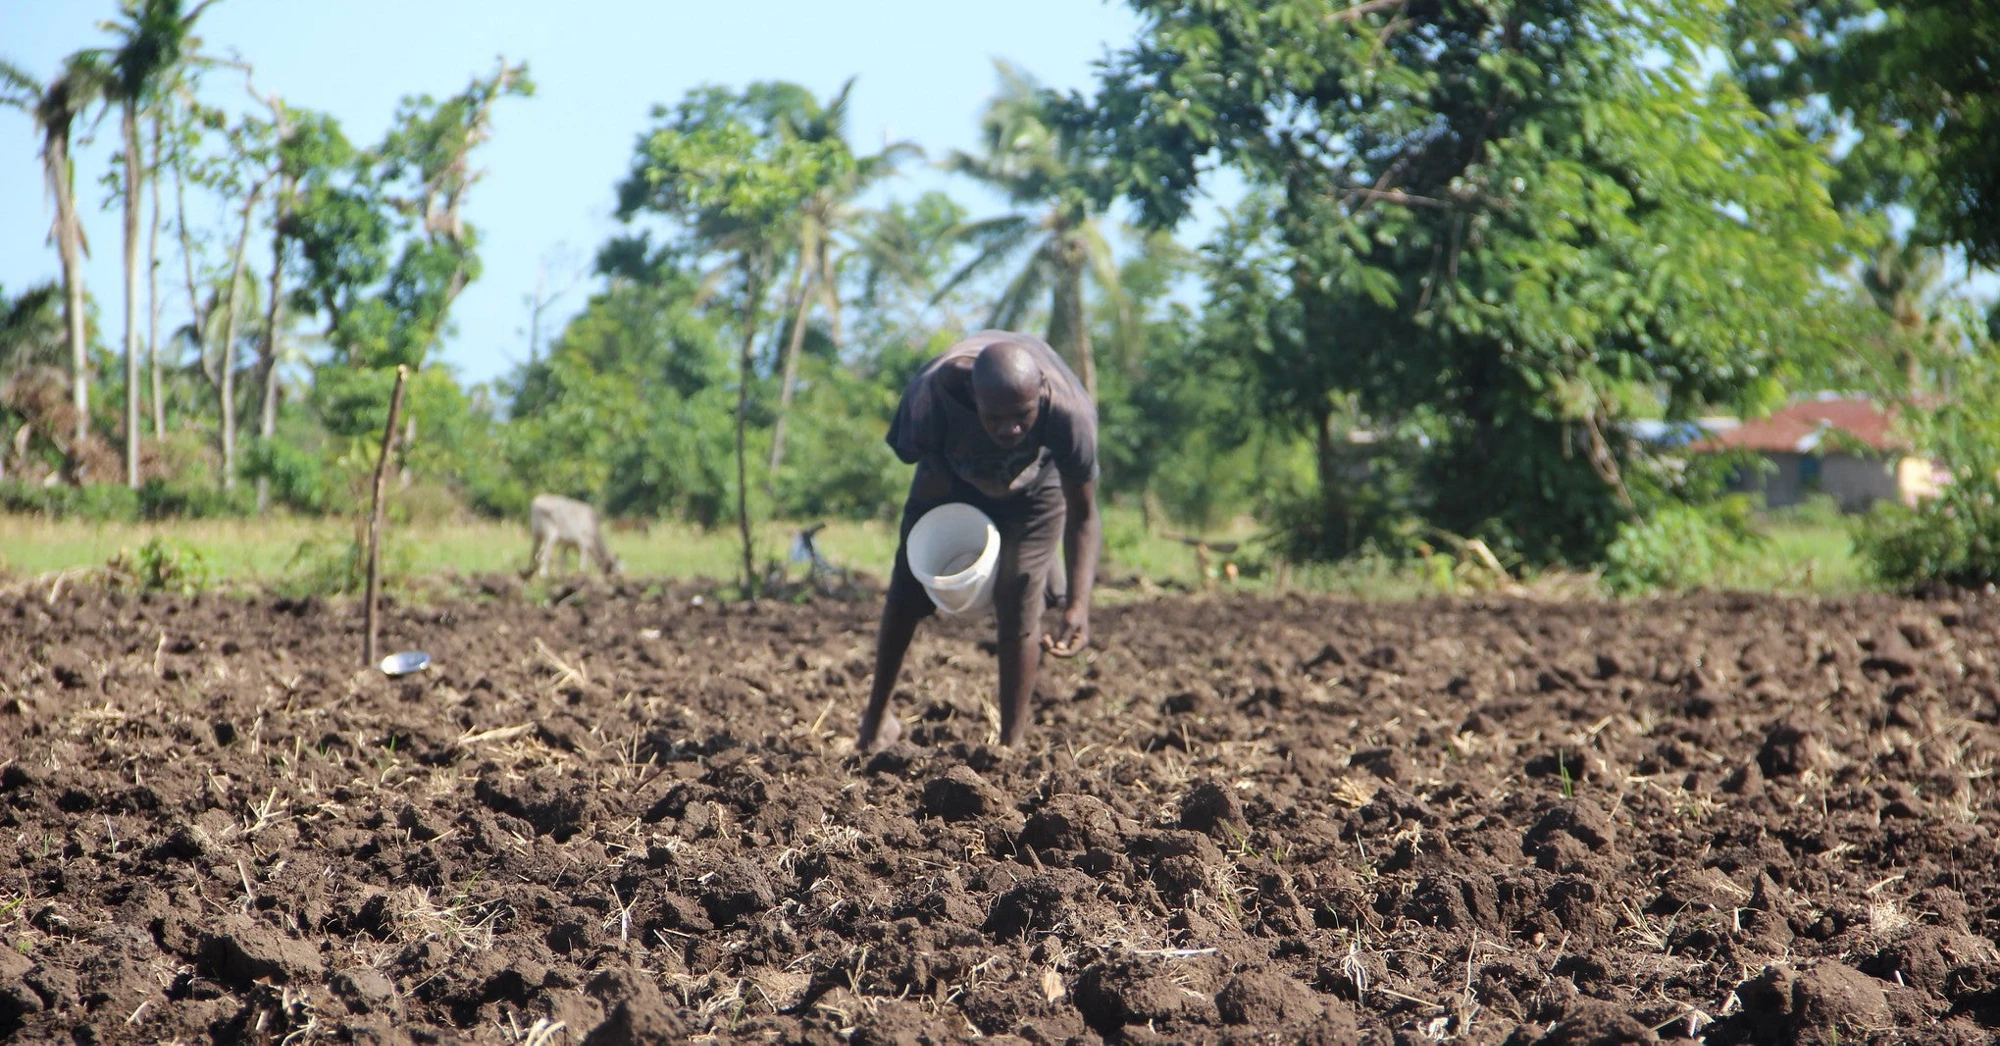 A man farming in Haiti